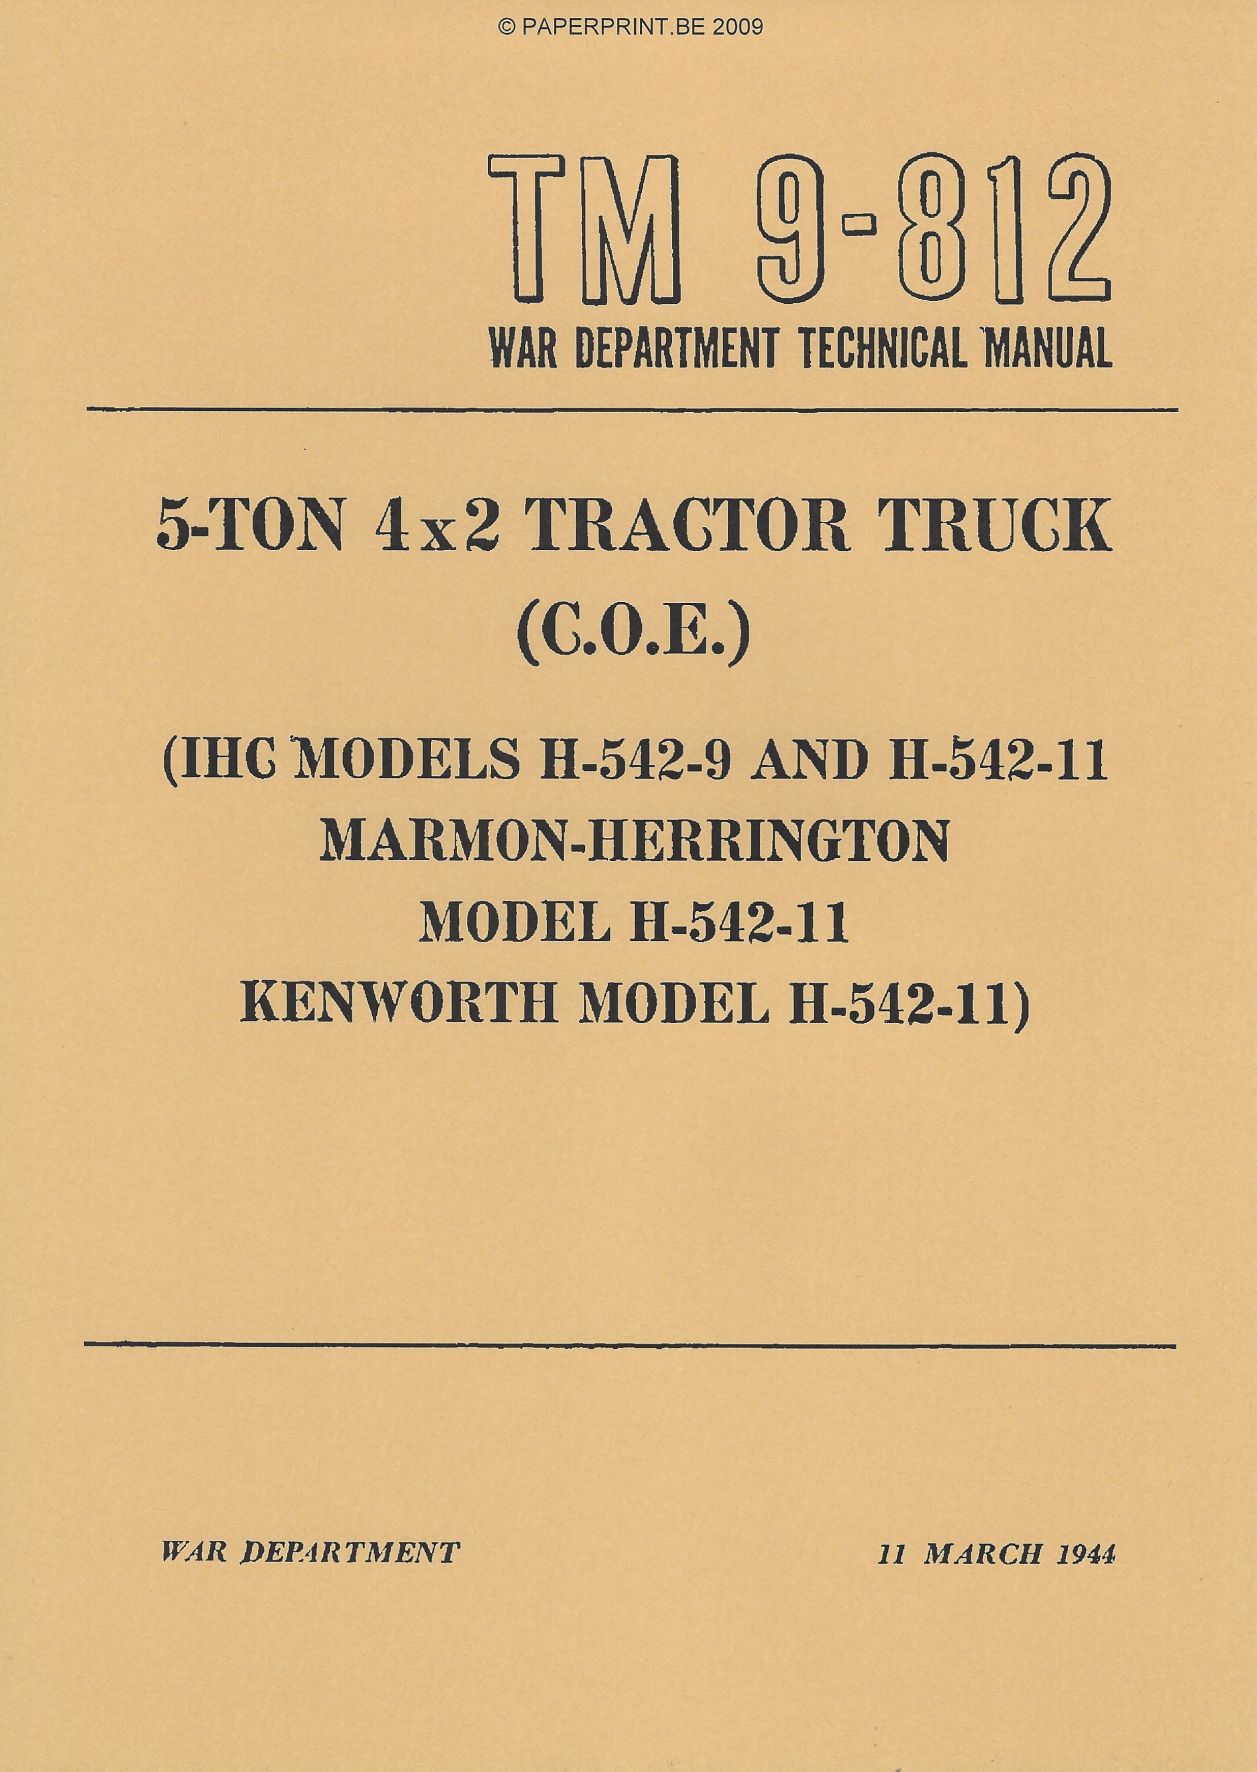 TM 9-812 US 5 - TON 4x2 TRACTOR TRUCK (C.O.E.)